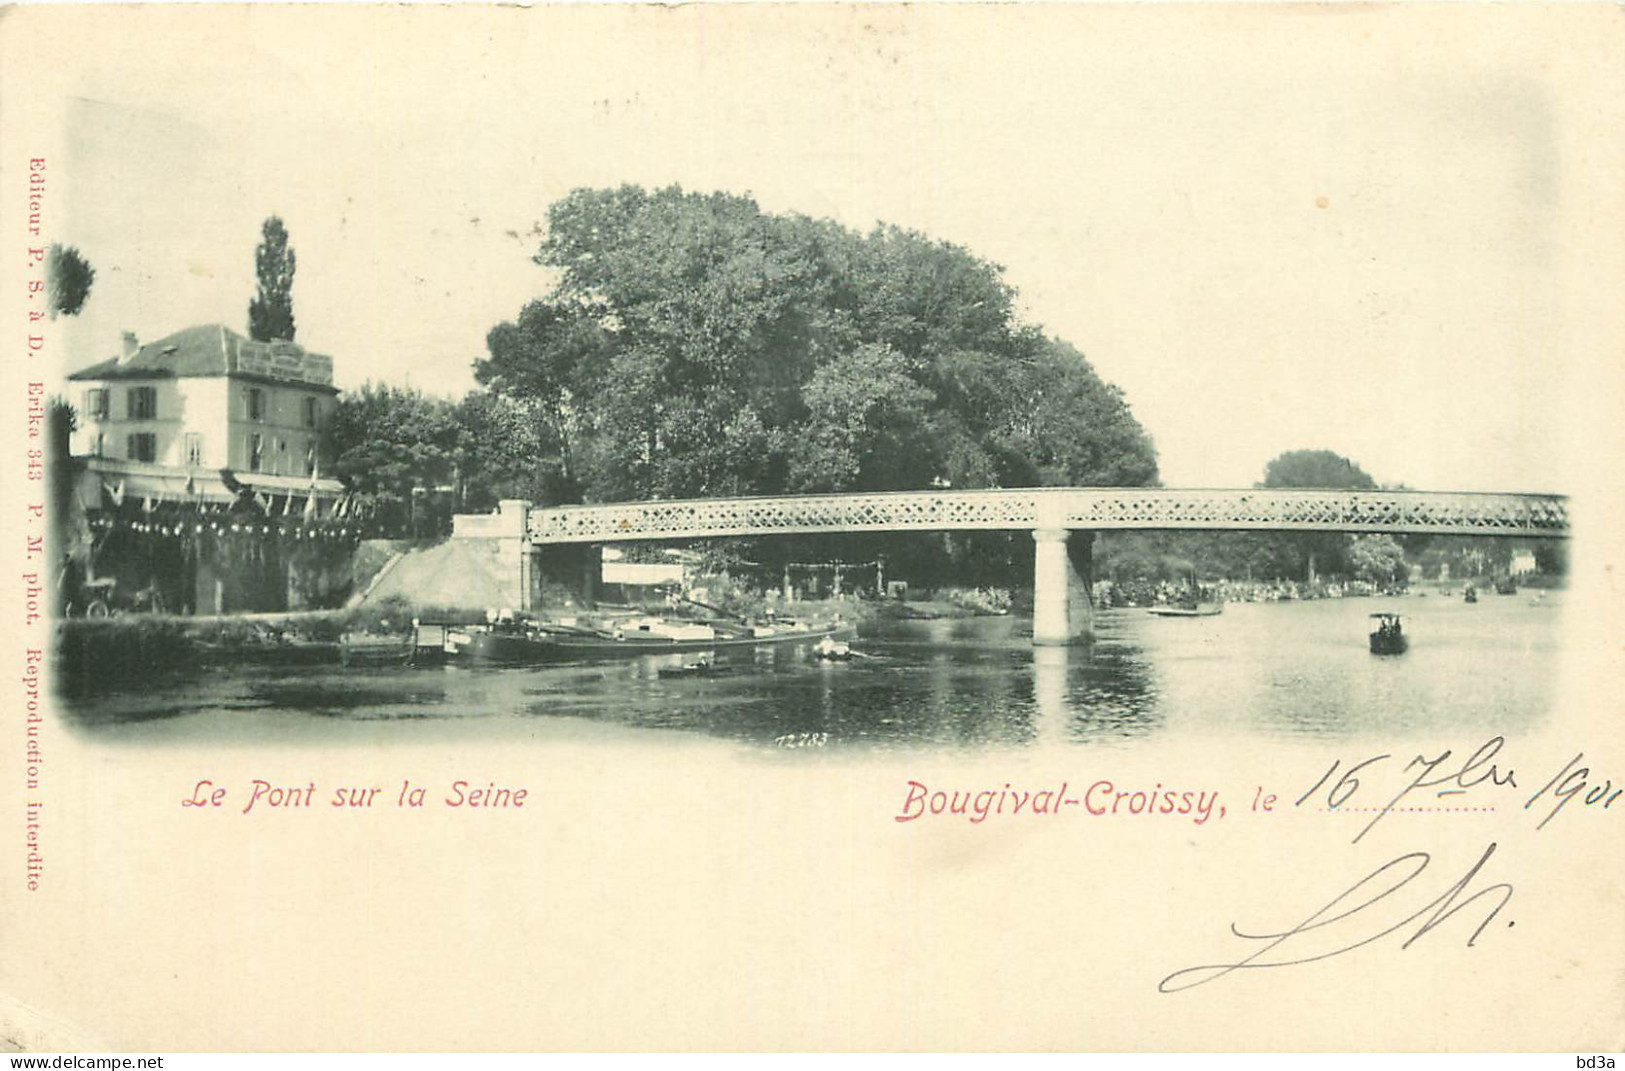  78  BOUGIVAL  CROISSY   Le Pont Sur La Seine  - Bougival